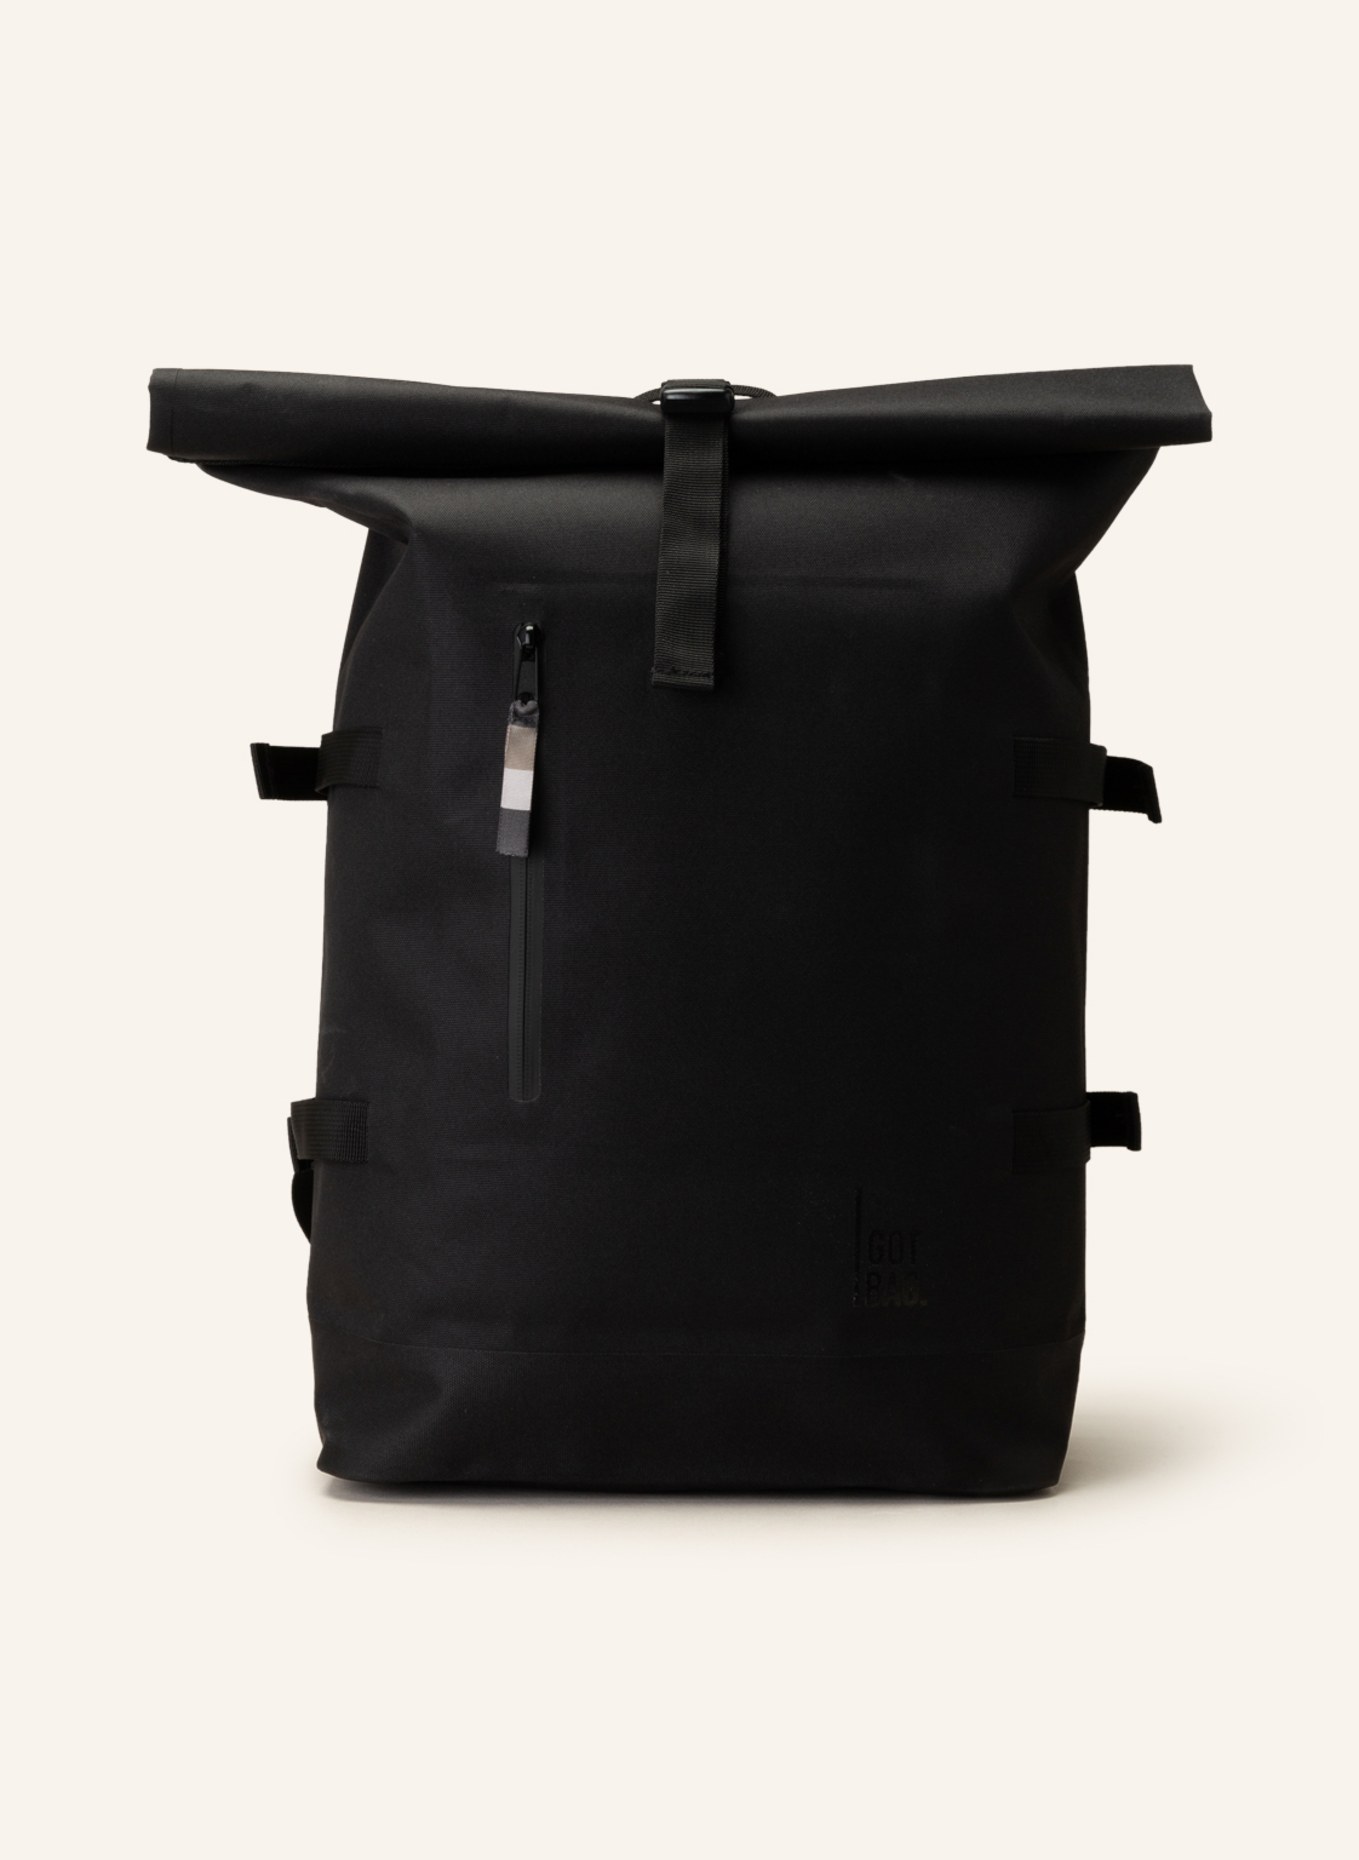 GOT BAG Backpack ROLLTOP, Color: BLACK (Image 1)